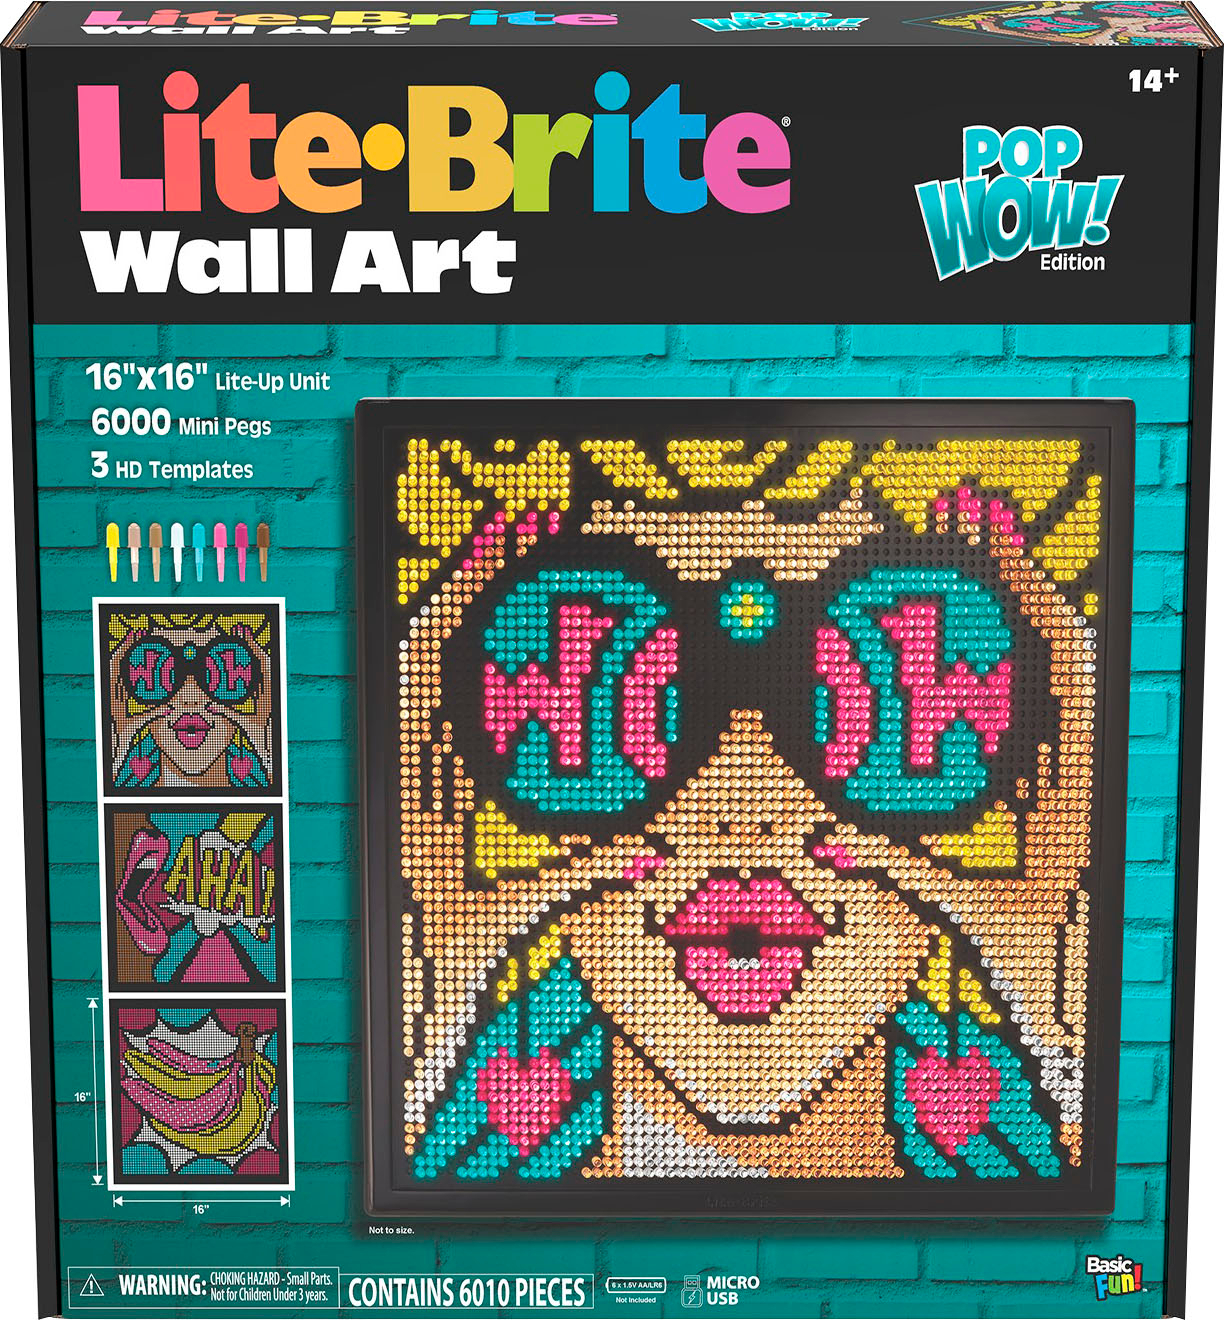 New Mega-Sized Lite-Brite Wall Art POP WOW! 